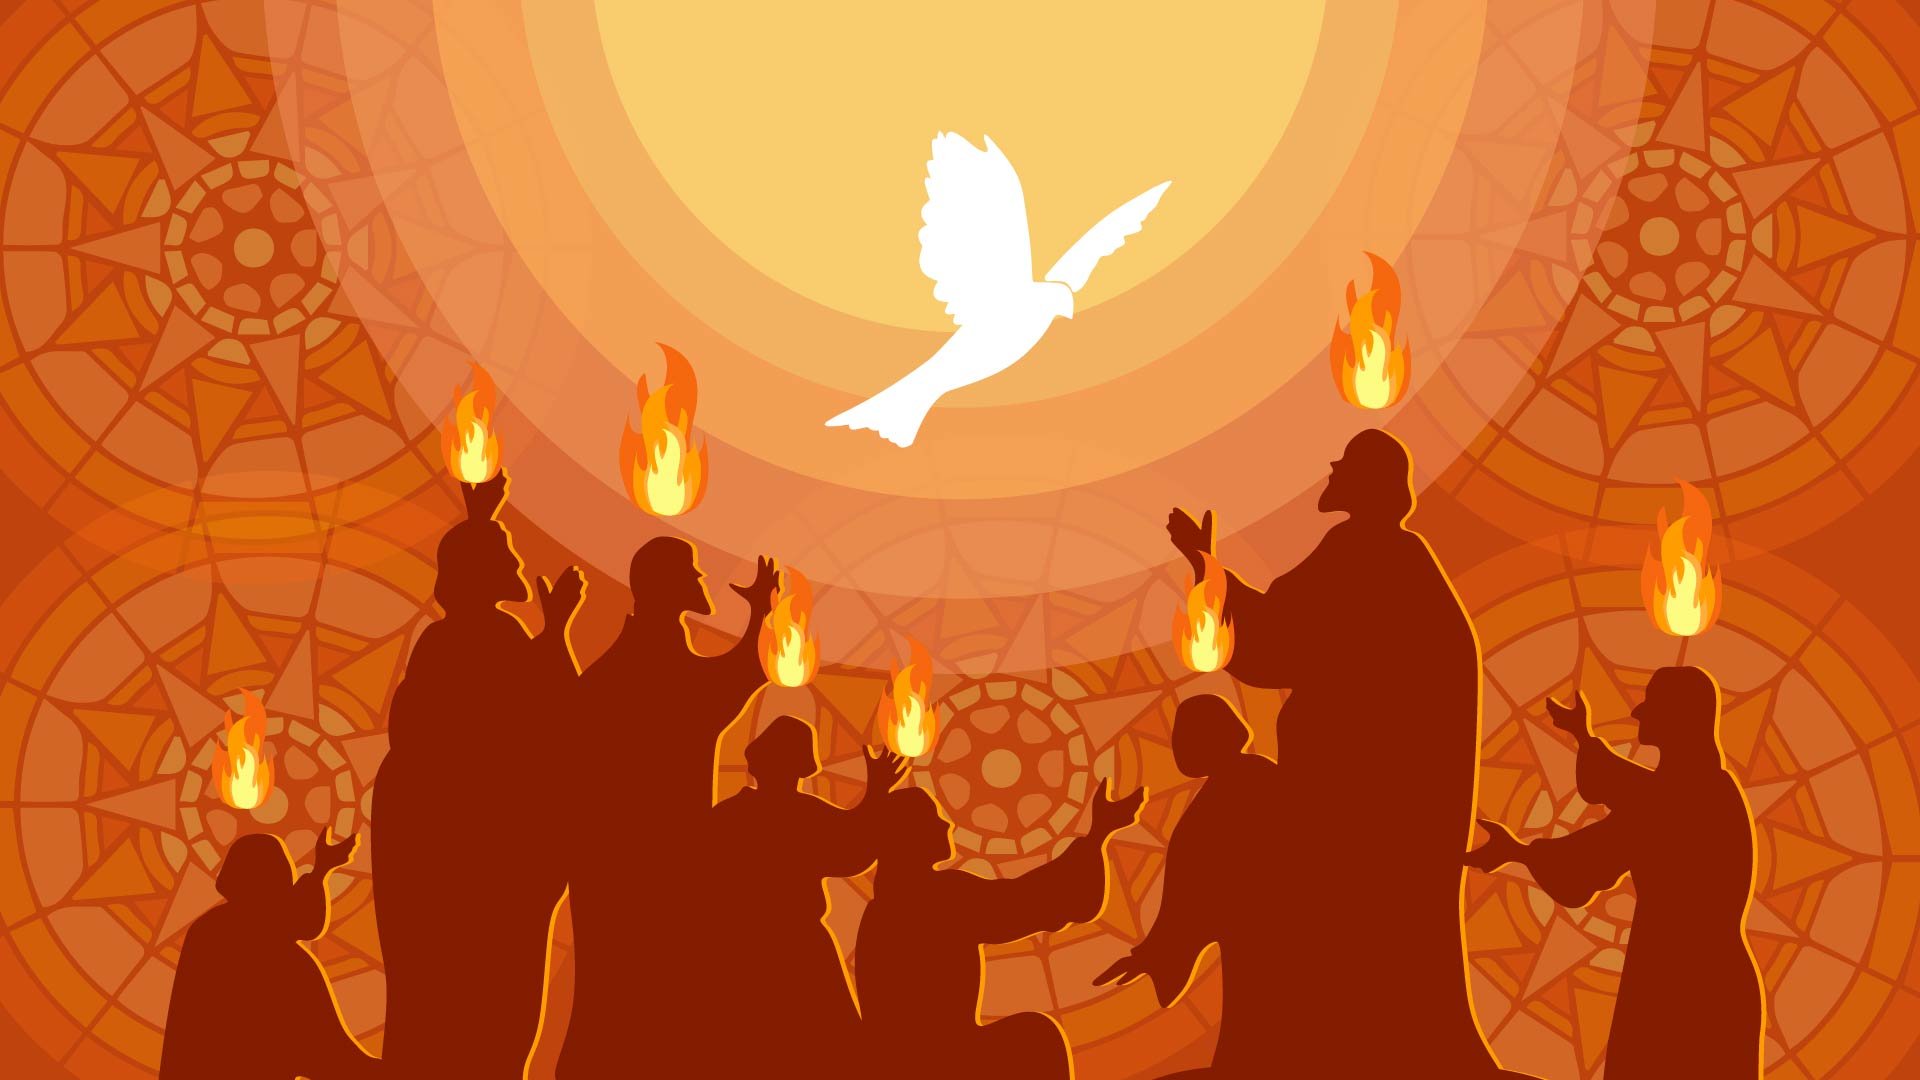 Pentecost Image Background